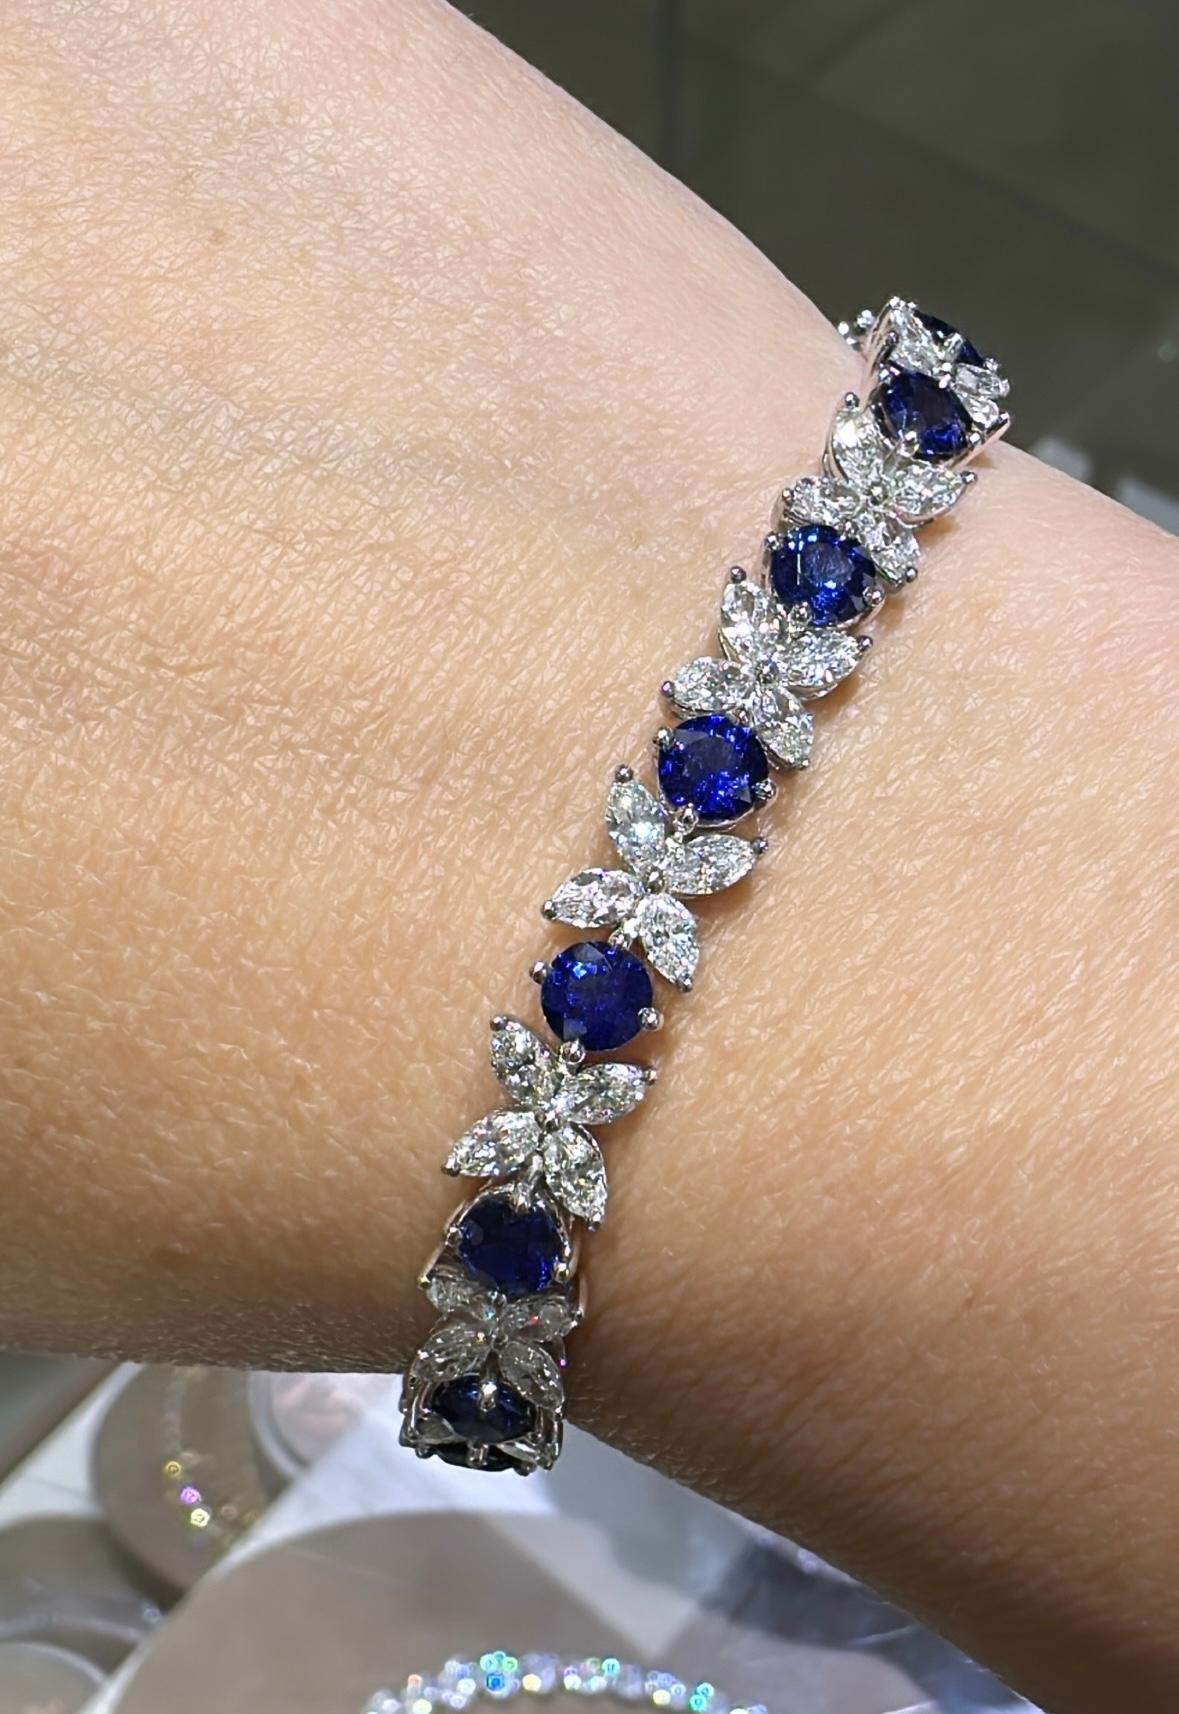 SKU : 126883
Le splendide bracelet de 14,40 carats en diamants taille marquise et saphir bleu la fera briller de mille feux dès que vous le mettrez à son poignet. La monture absolument magnifique, avec ses diamants taille marquise et ses saphirs